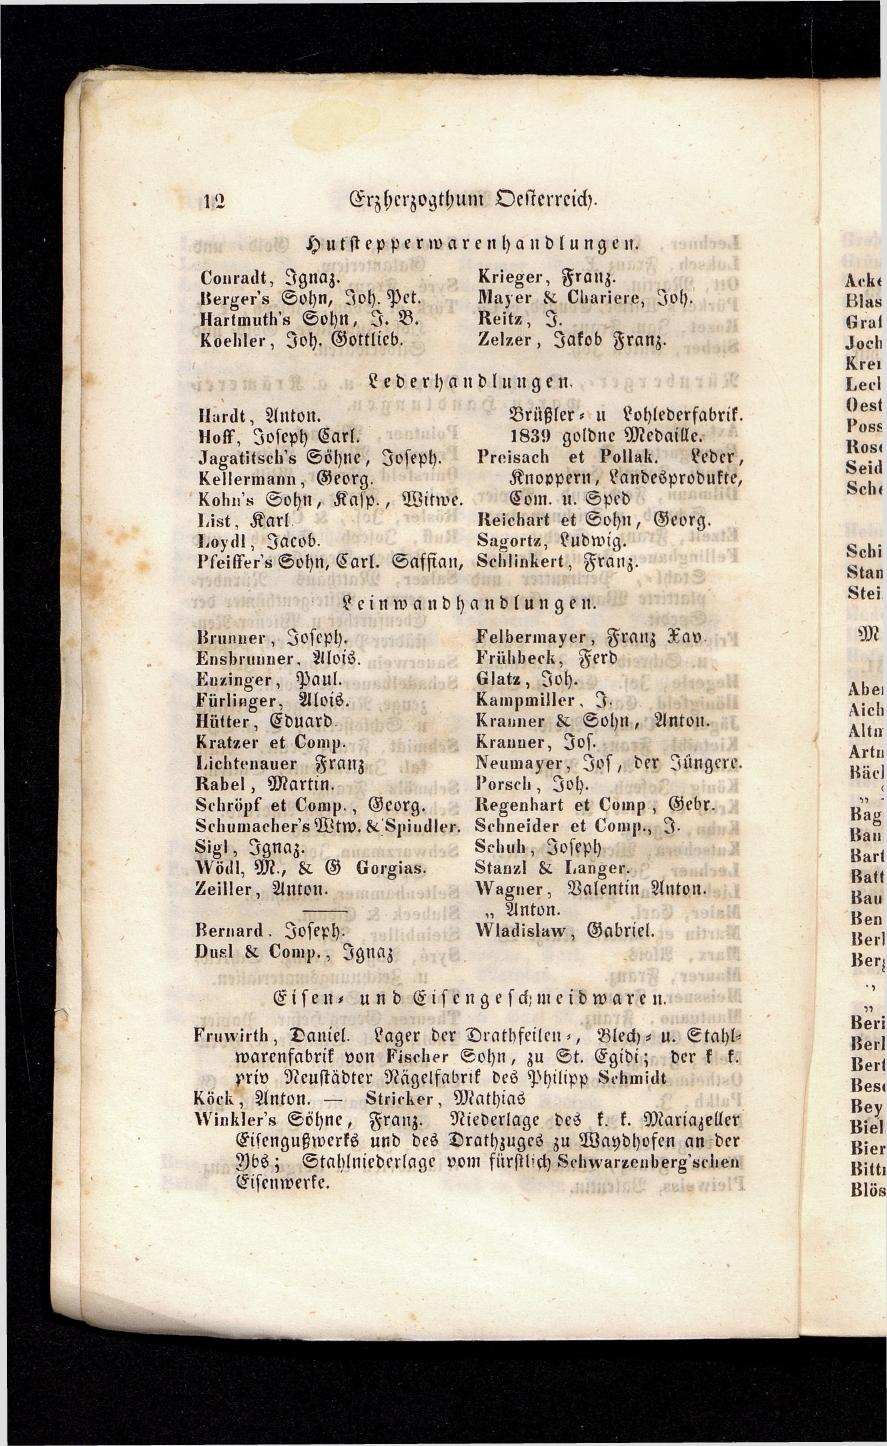 Grosses Adressbuch der Kaufleute. No. 13. Oesterreich ober u. unter der Enns 1844 - Seite 16